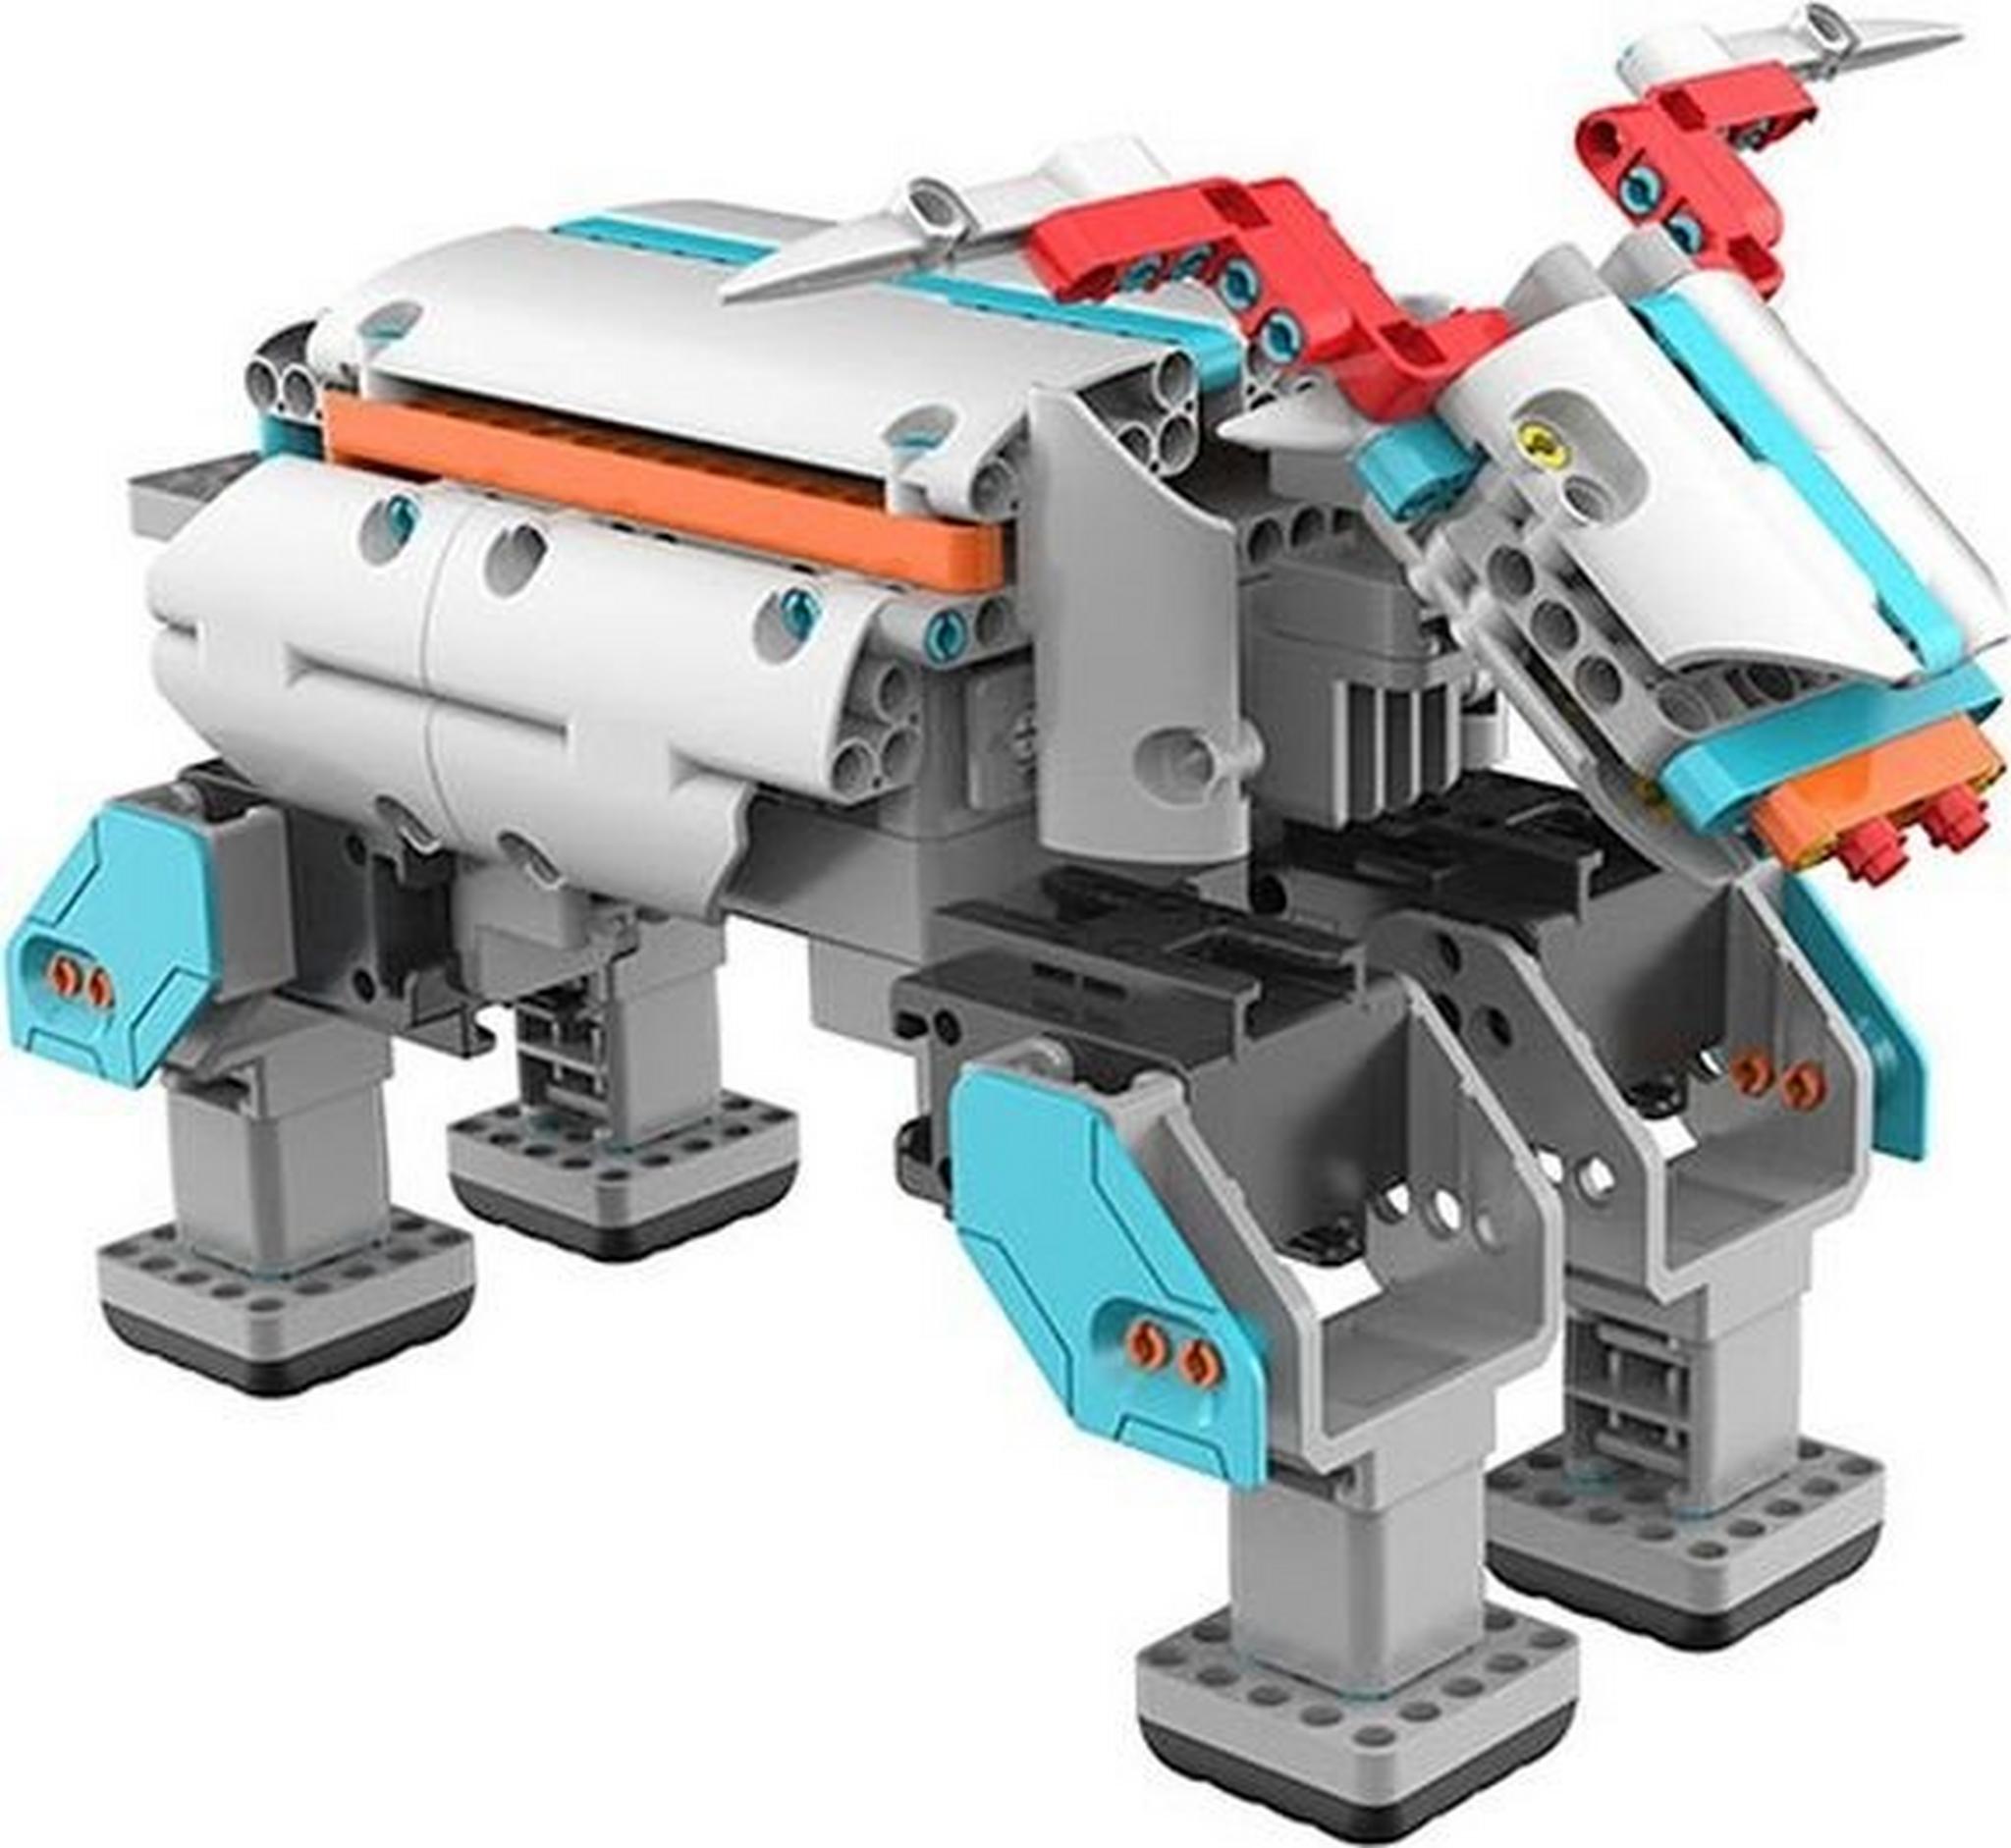 مجموعة جيمو ميني كيت لبناء الروبوت الذكي من يو بي تك